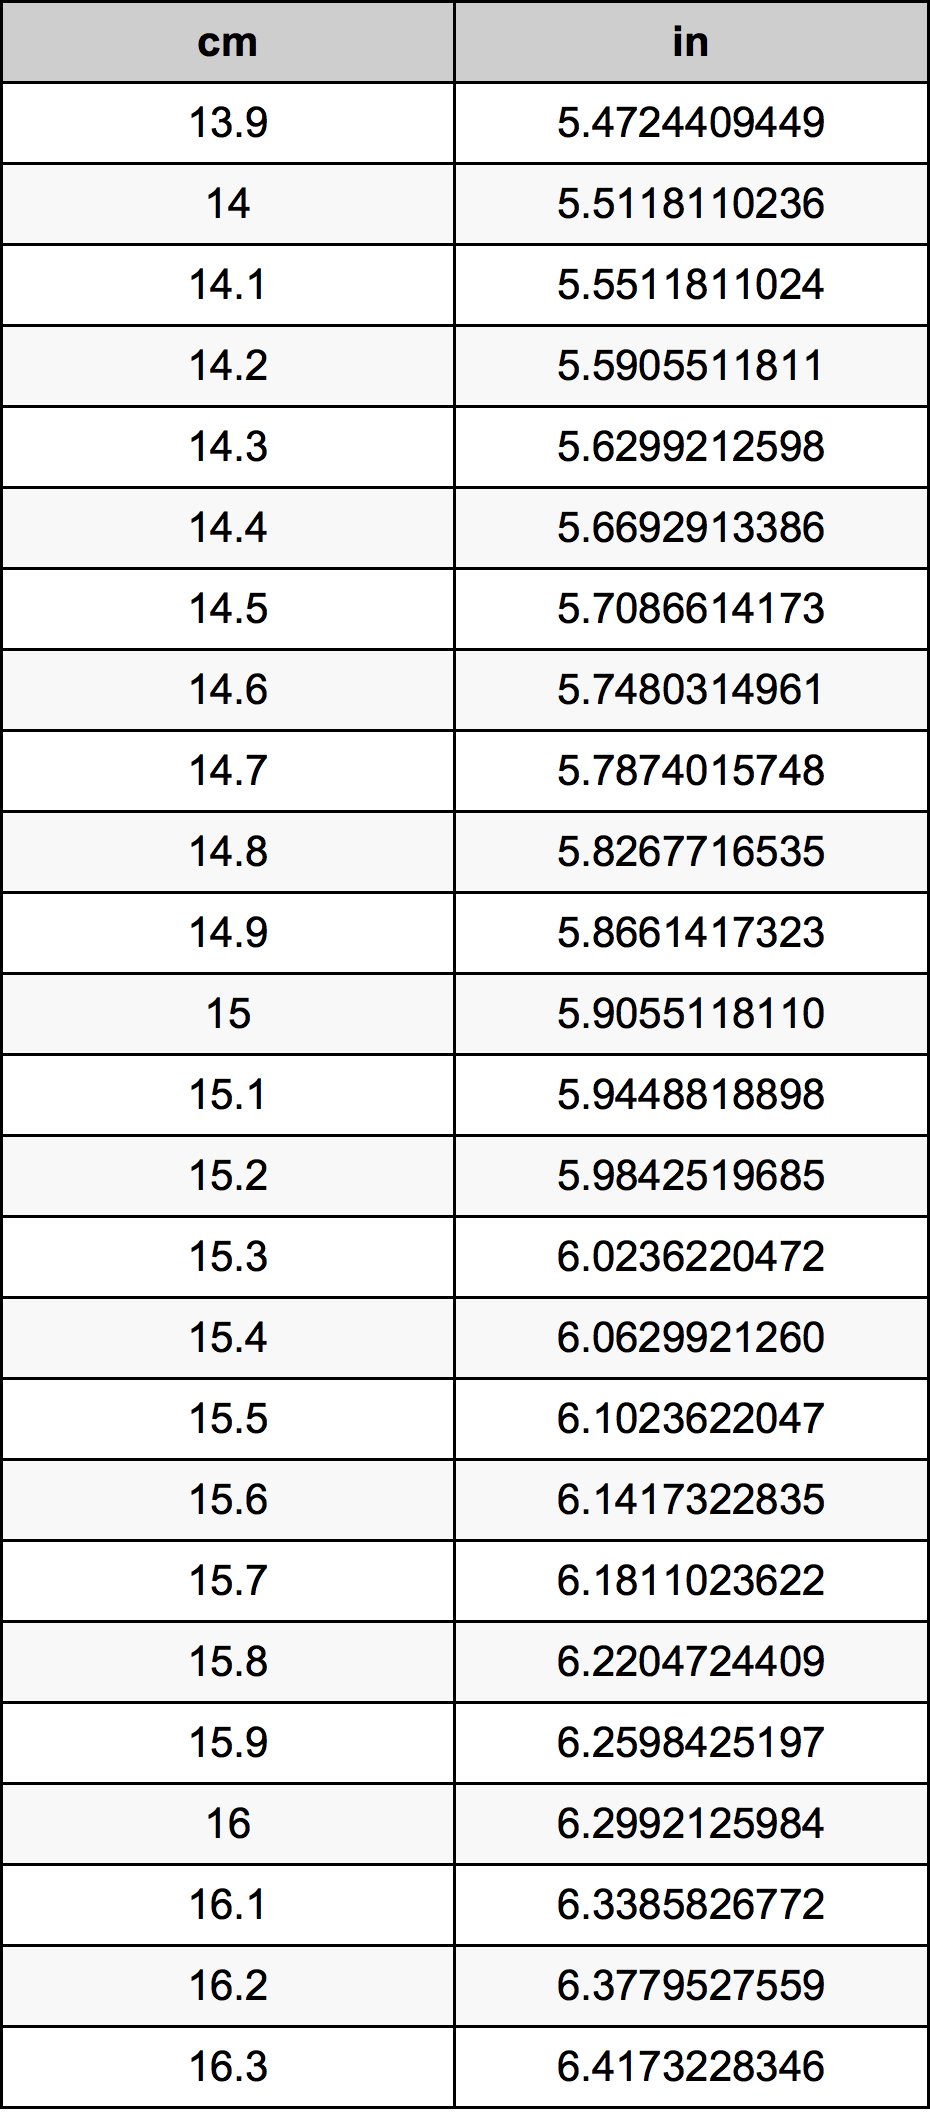 15.1 Centiméter átszámítási táblázat